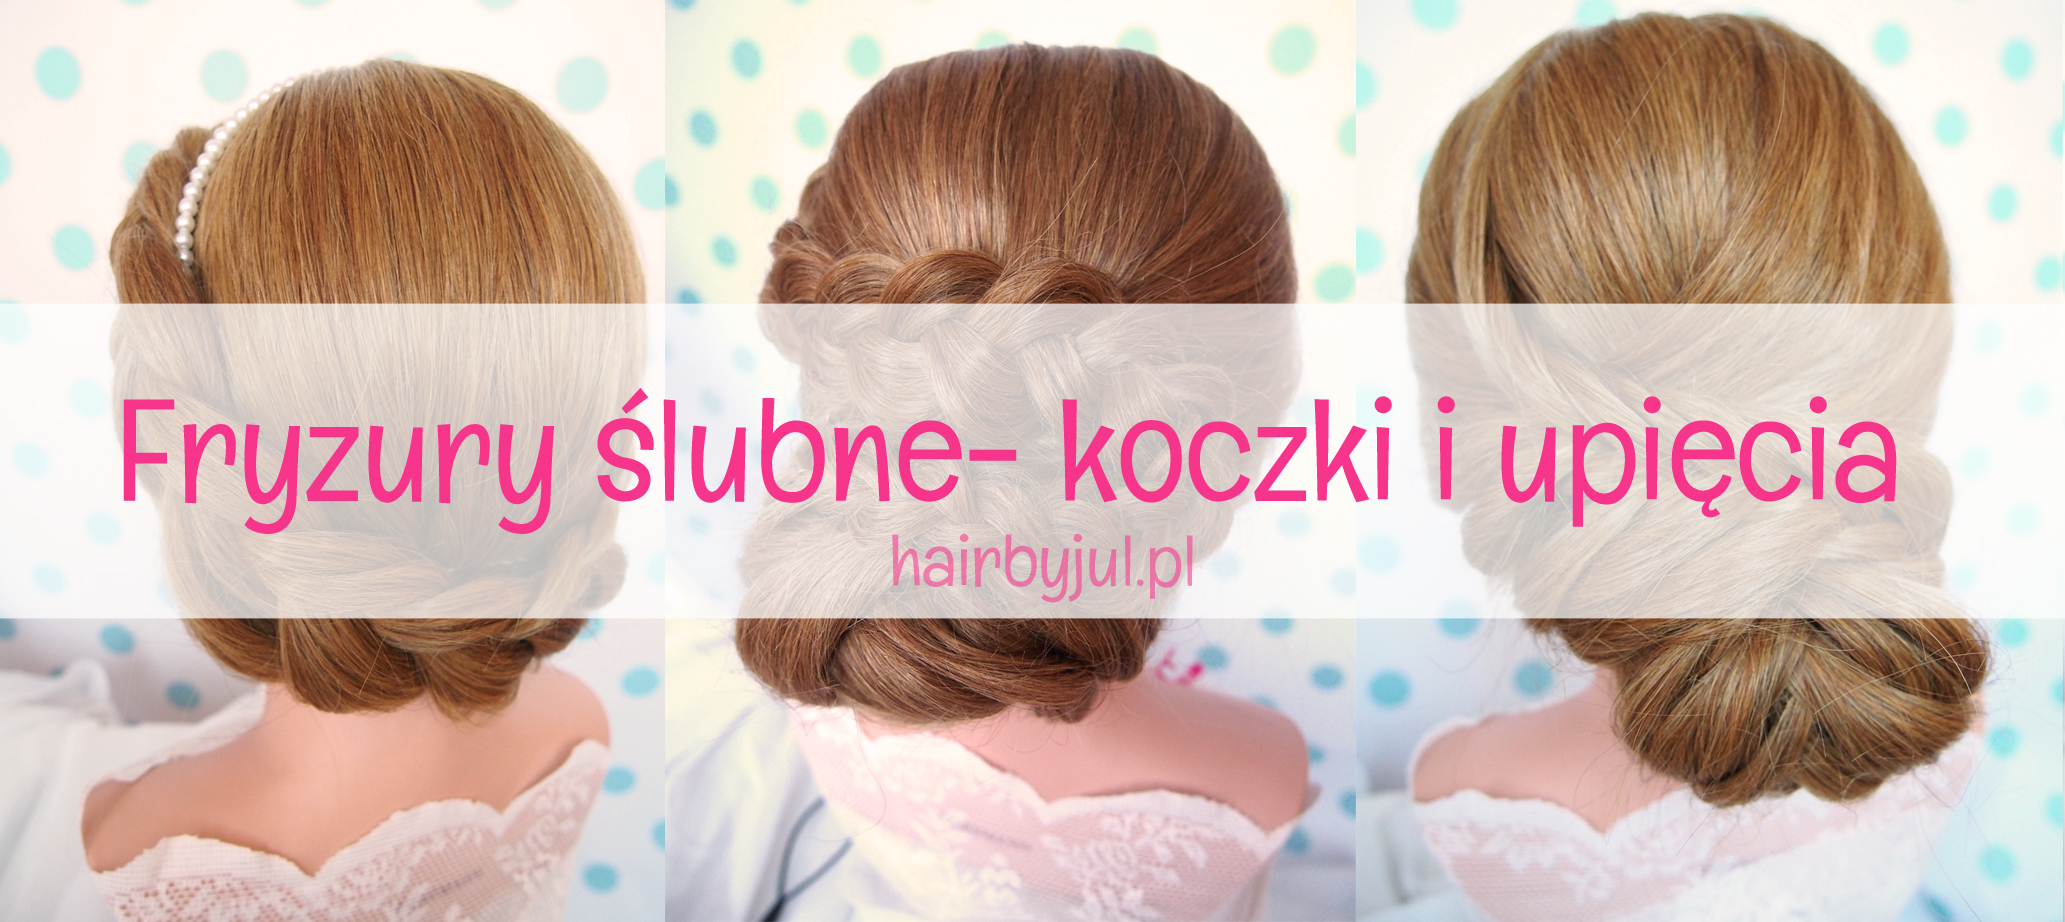 Fryzury ślubne- koczki - Hair by jul- fryzury, tutoriale, inspiracje